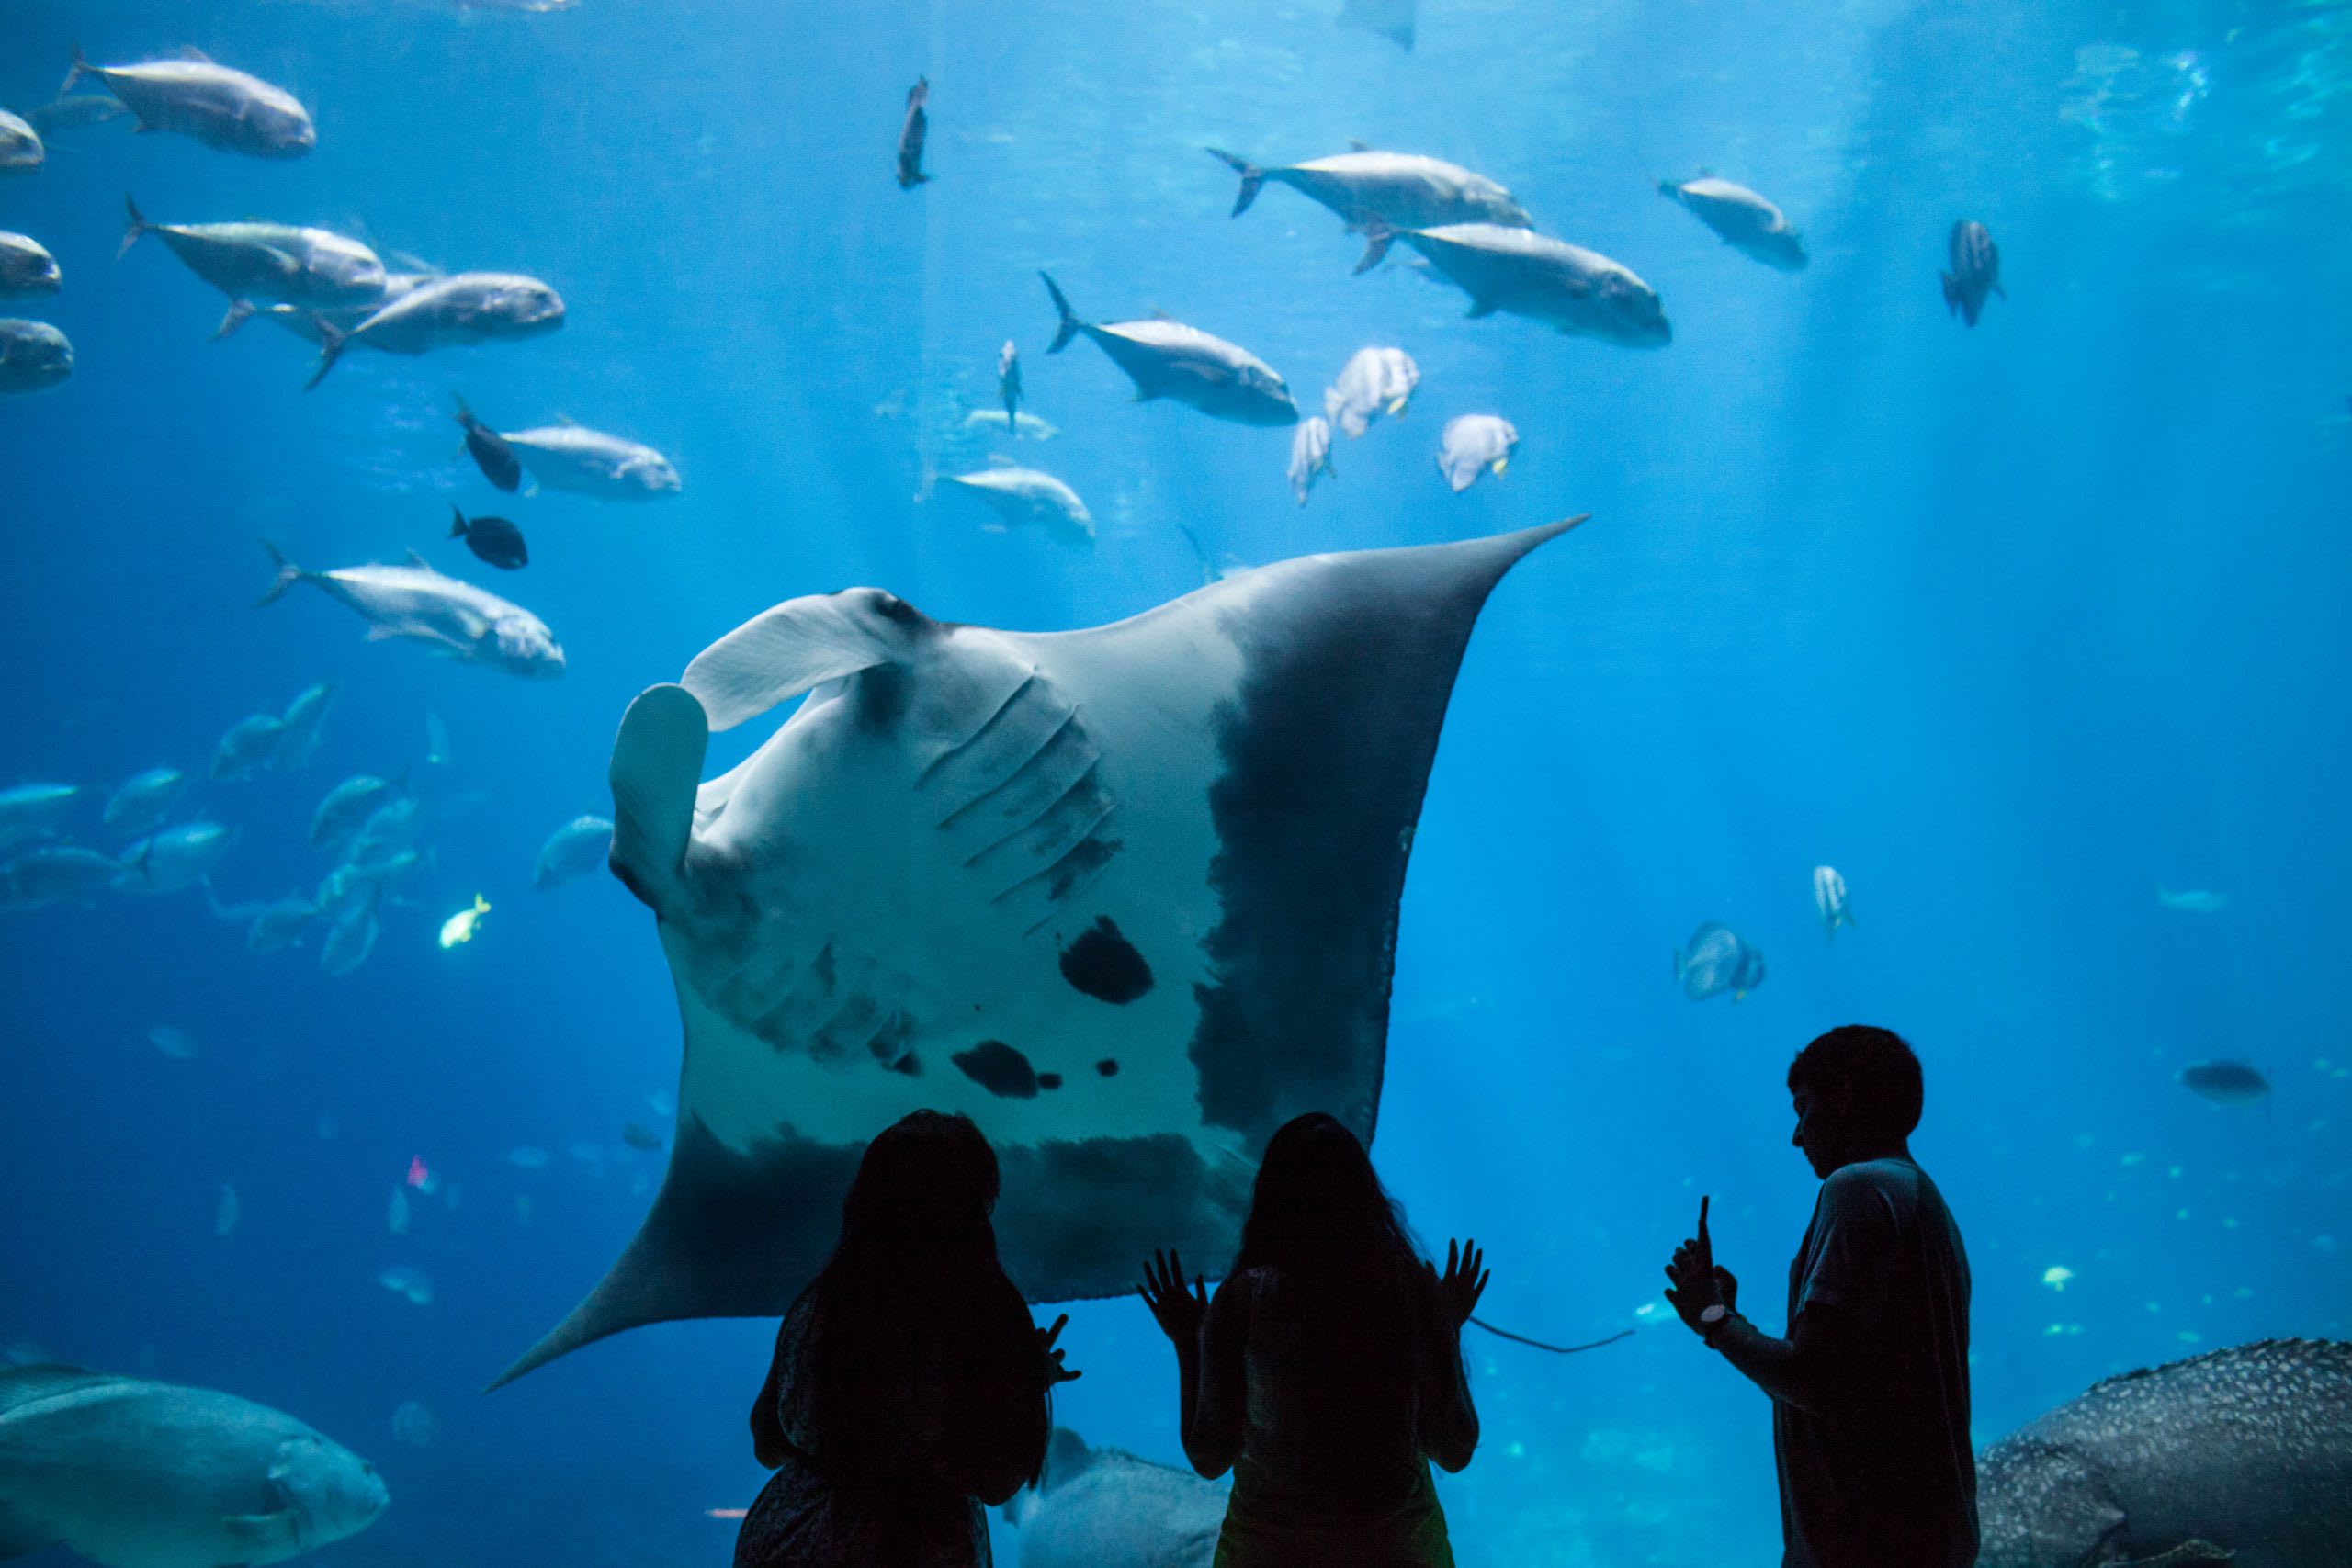 Georgia Aquarium is one of the top places to visit in Atlanta